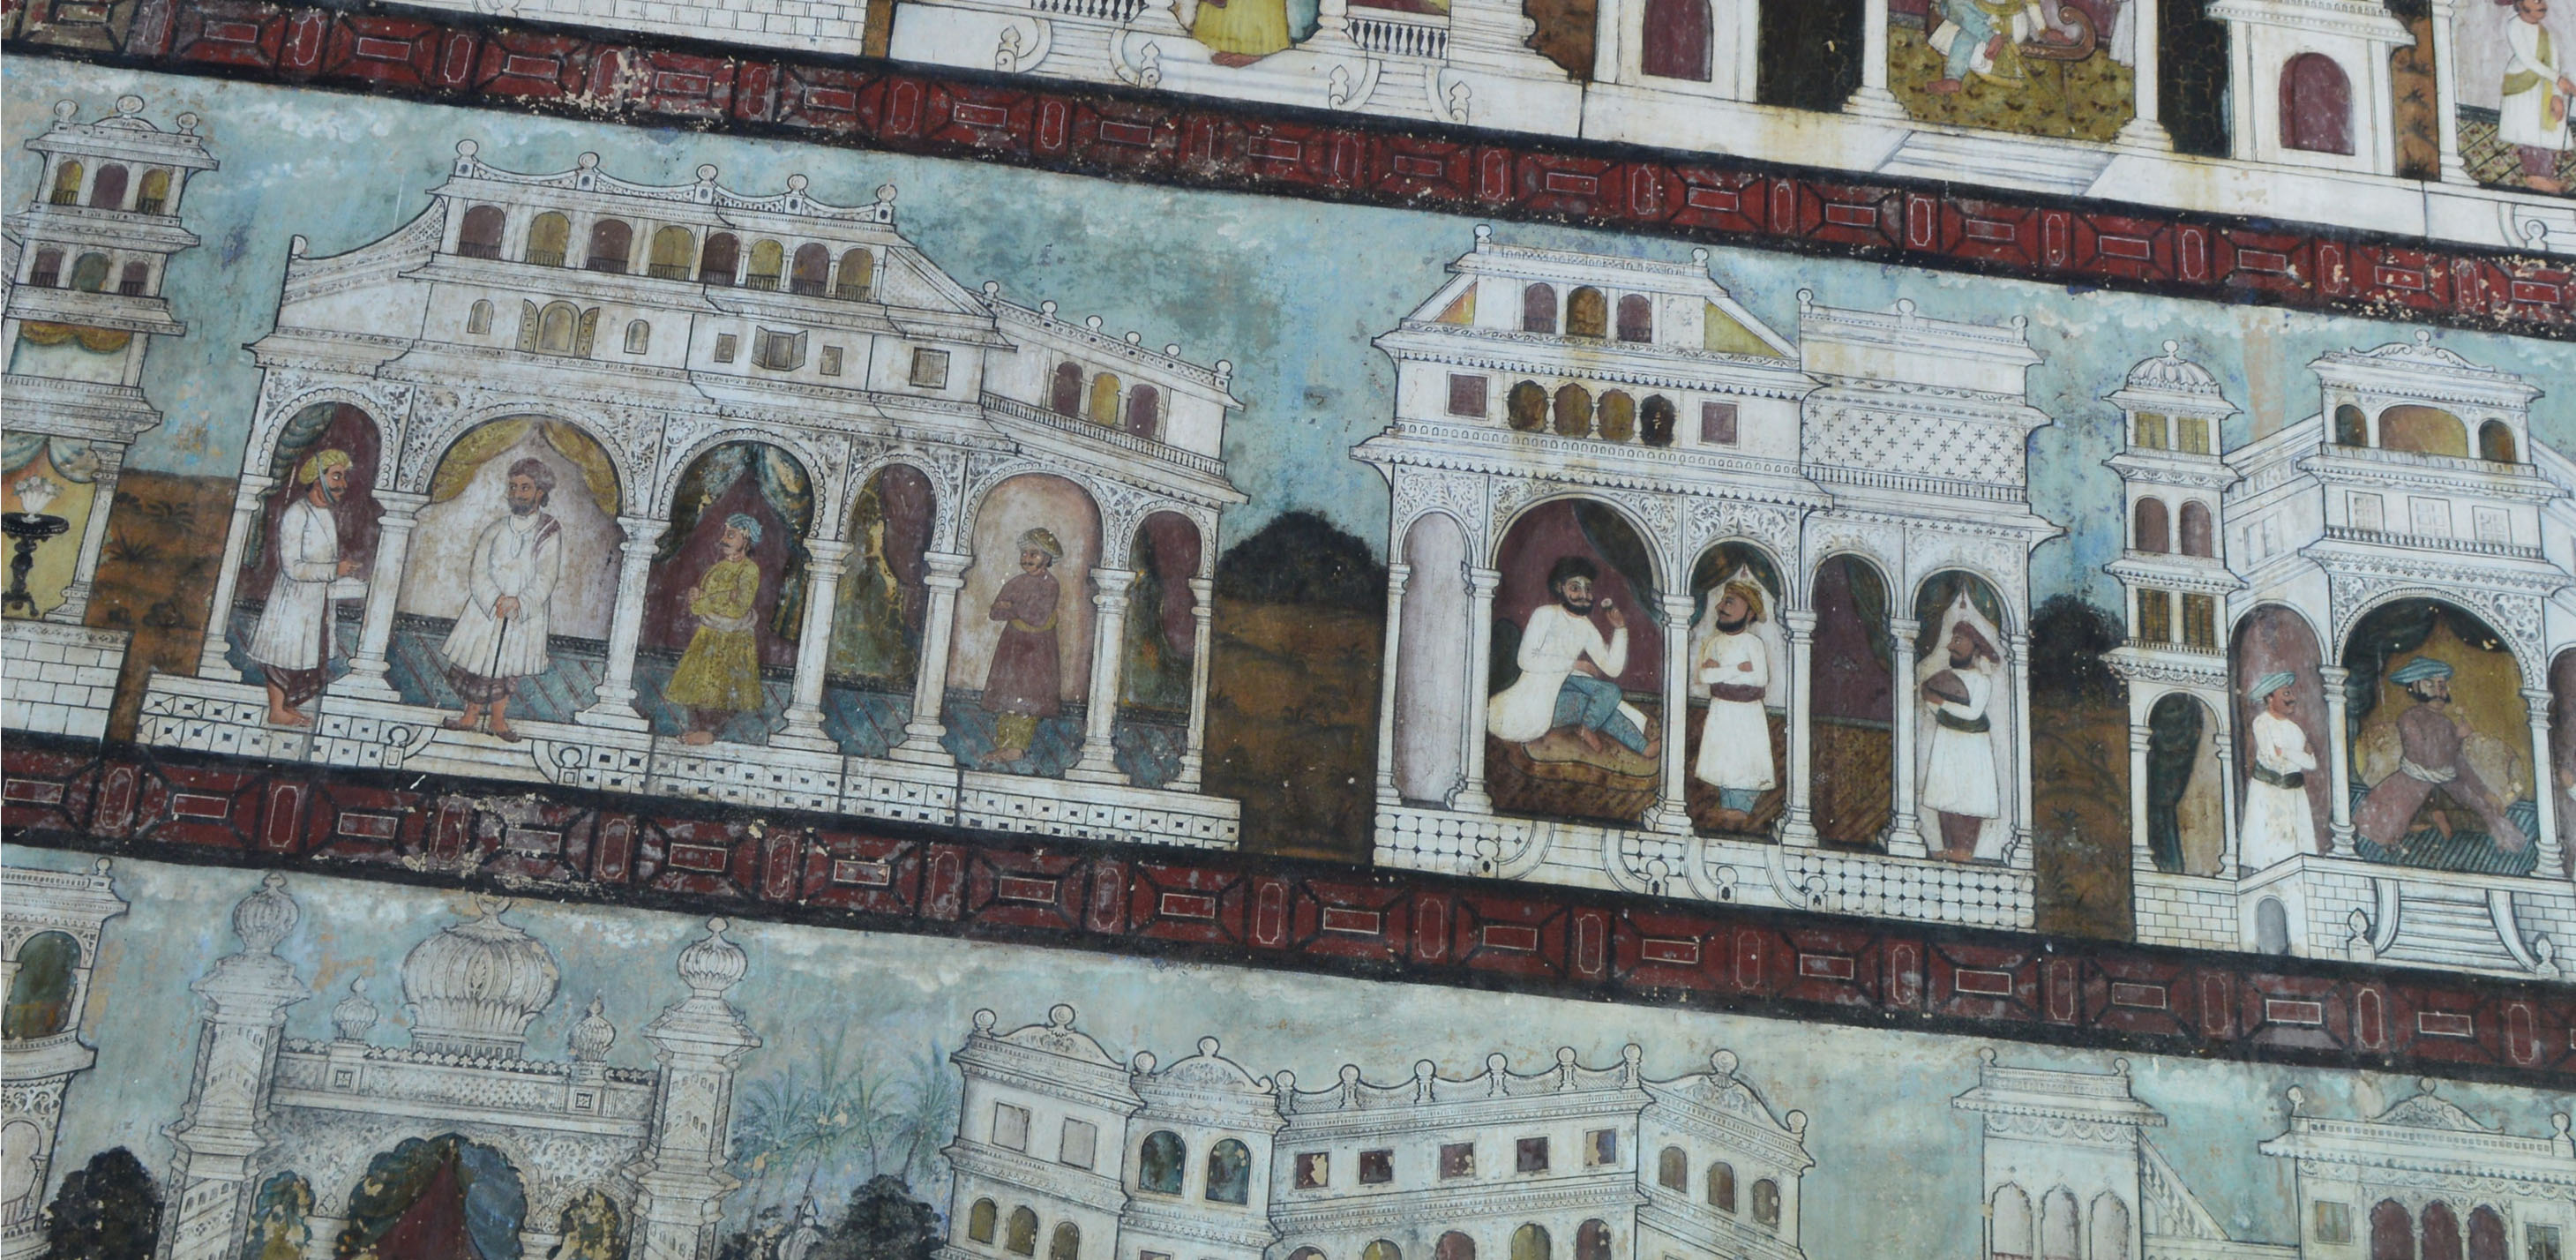 Architecture and Urban Development of the Deccan Sultanates